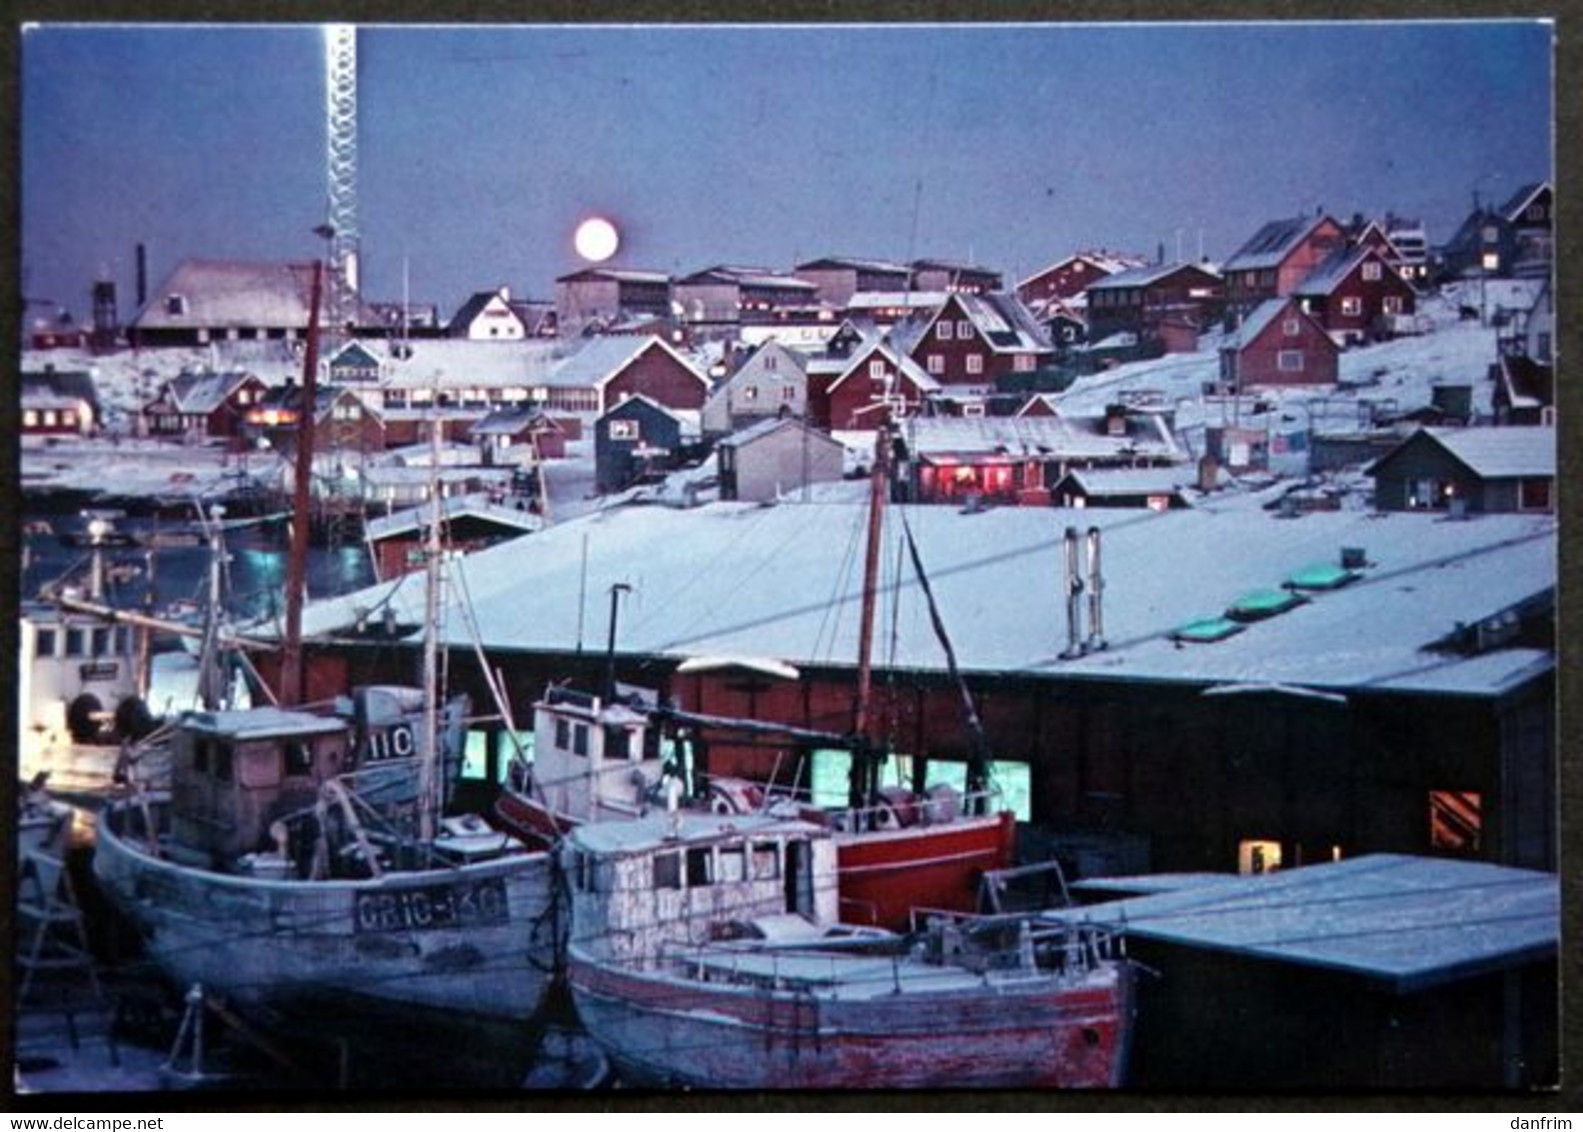 Greenland  Cards POLAR NIGHT, EGEDESMINDE  17-11-1980 EGEDESMINDE( Lot  708 ) - Groenland